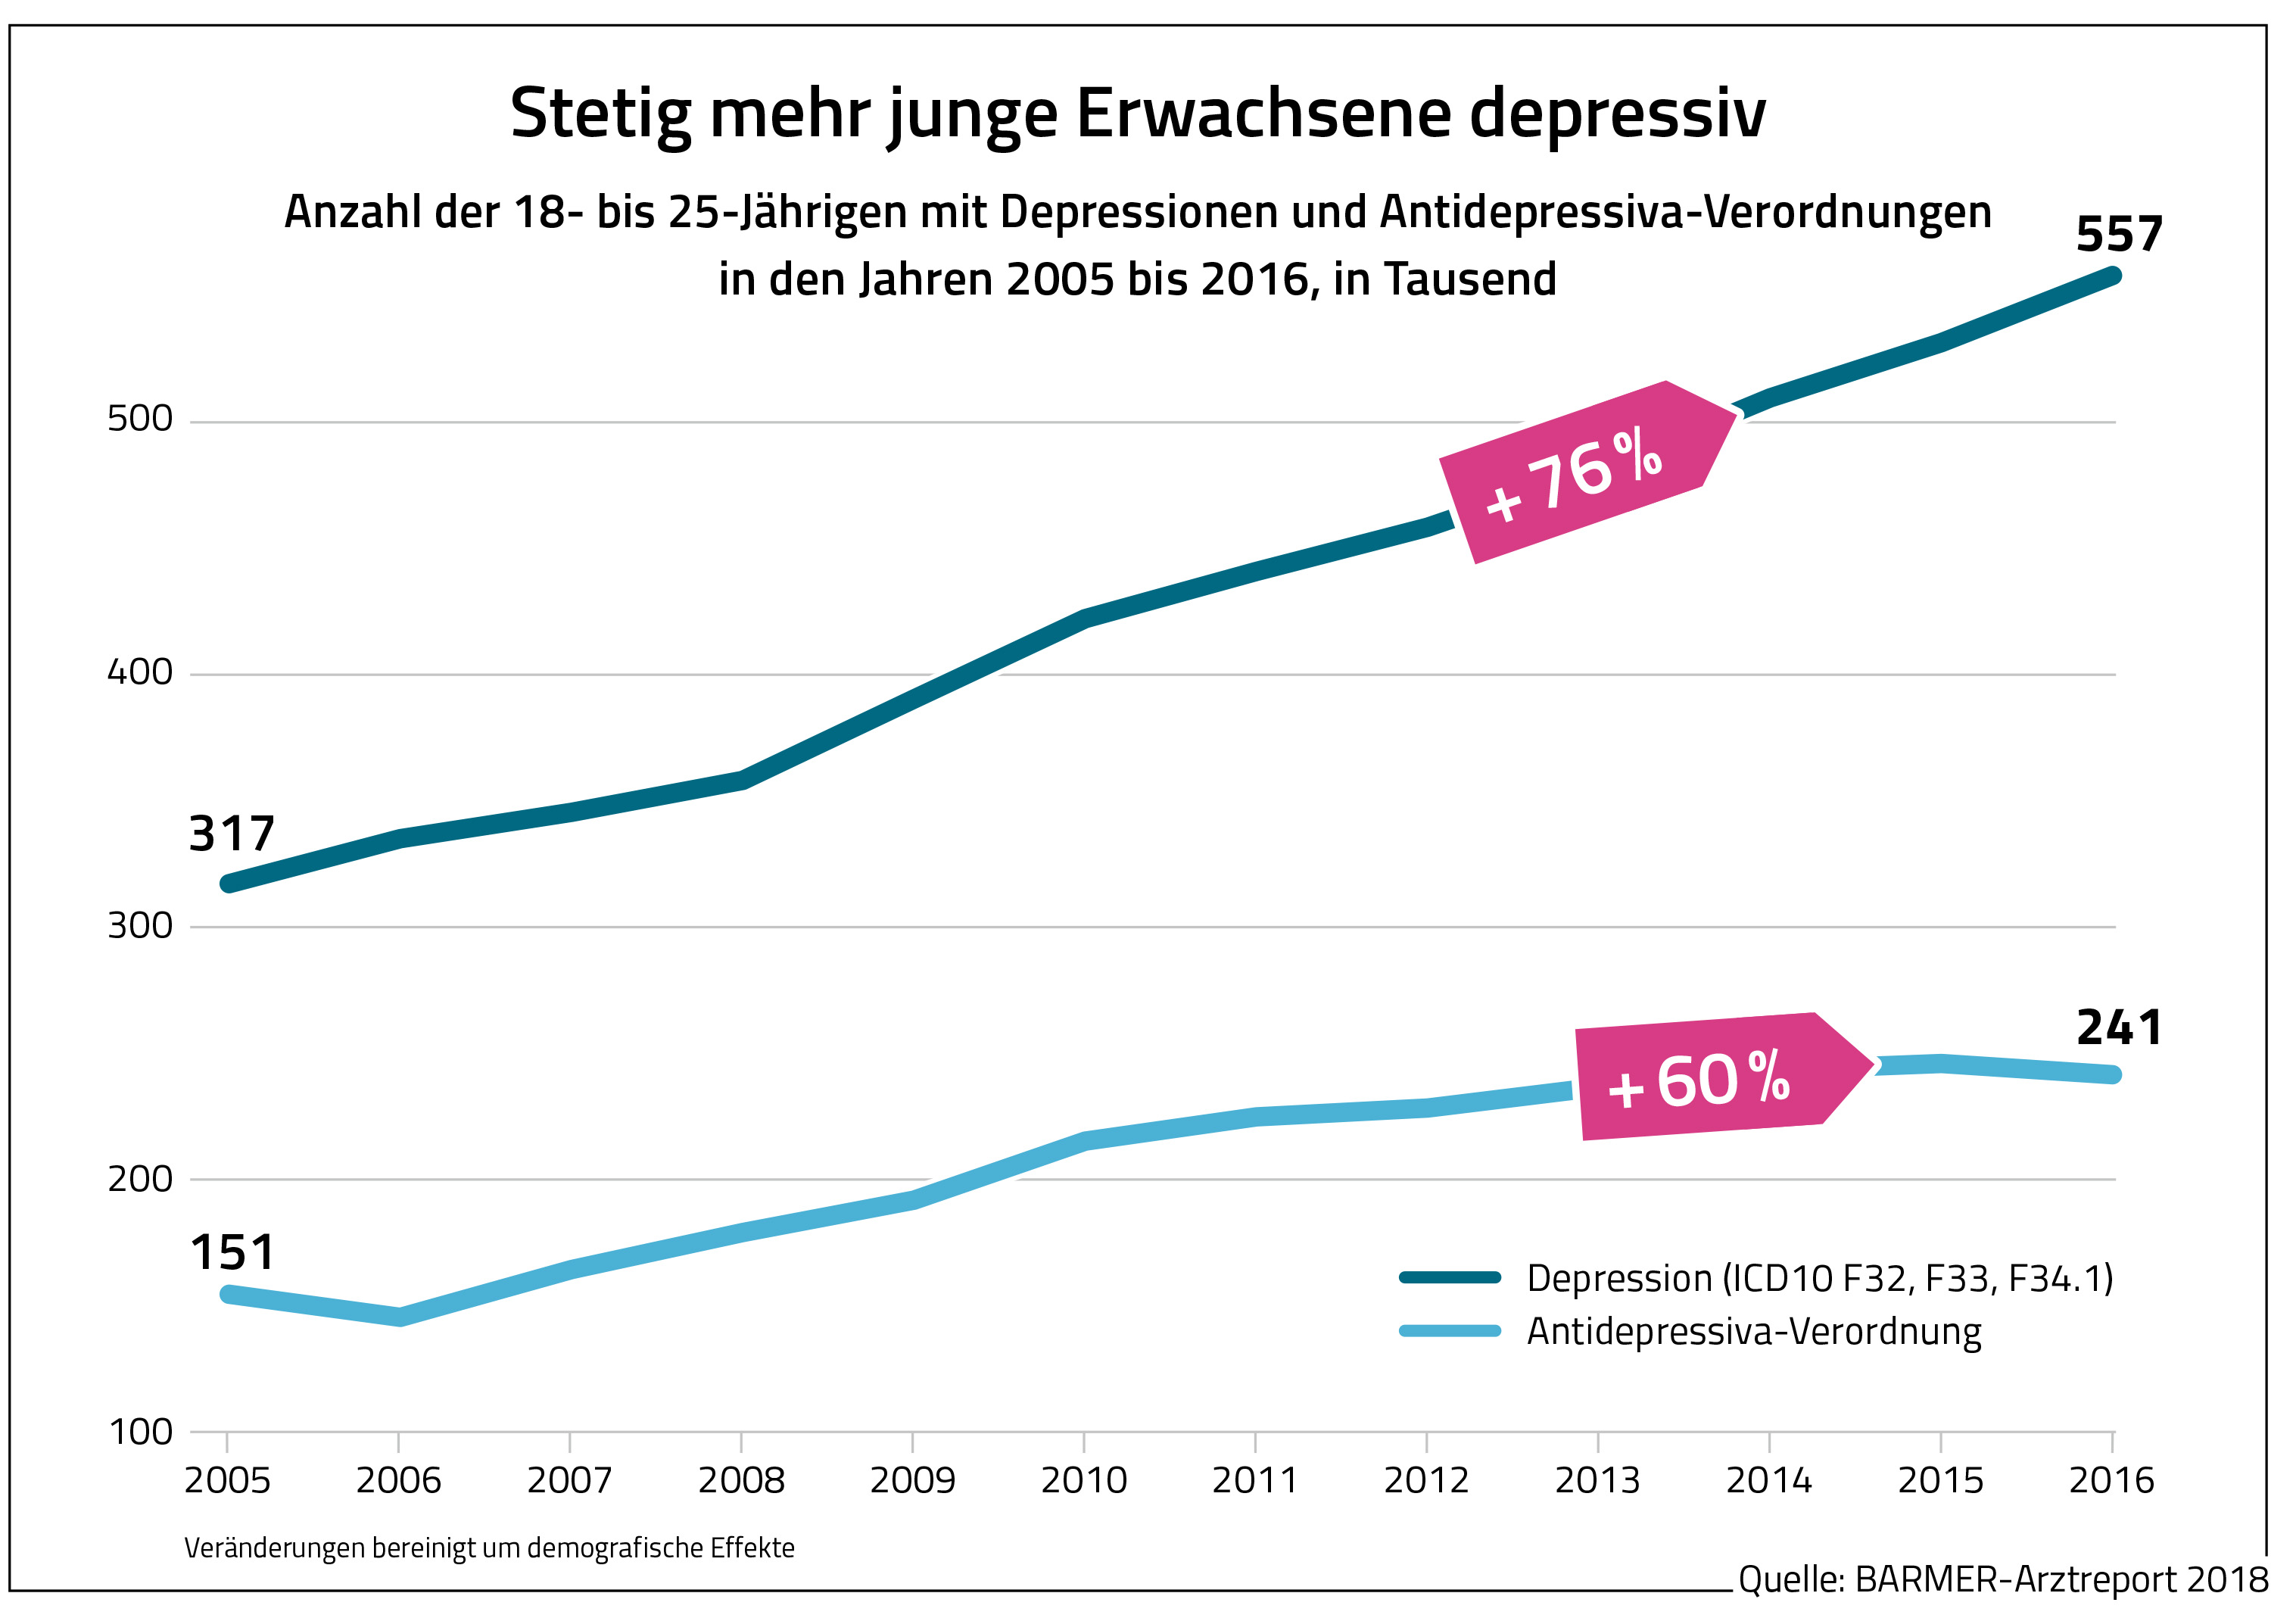 Die Grafik zeigt die Anzahl der 18- bis 25-Jährigen mit Depressionen und Antidepressiva-Verordnungen in den Jahren 2005 bis 2016